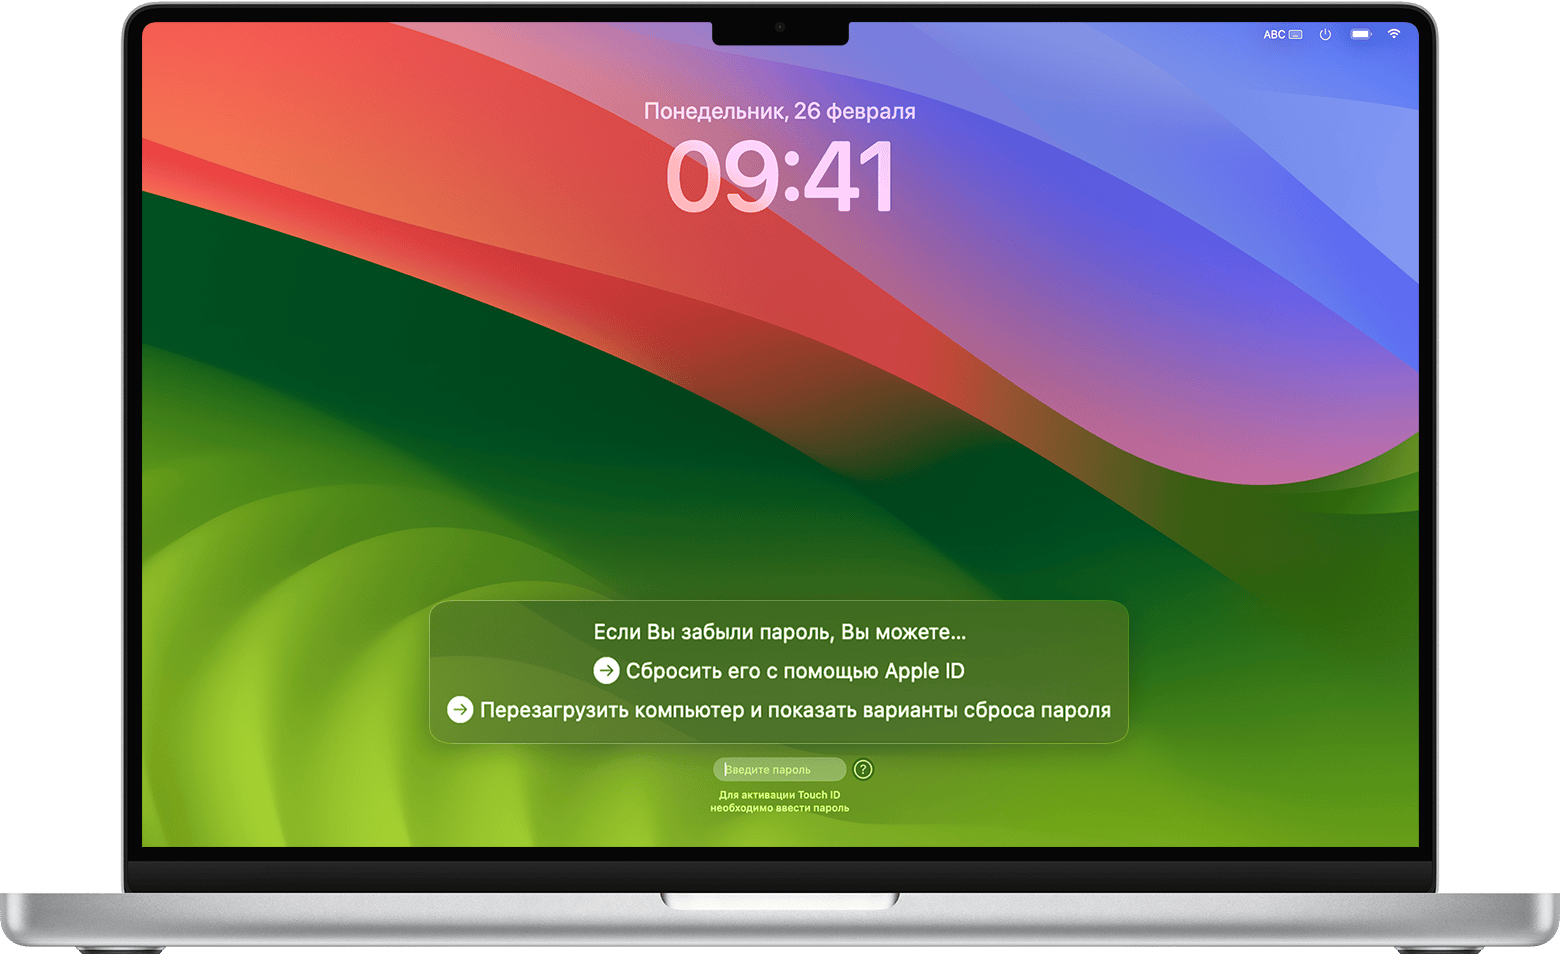 Варианты сброса пароля в окне входа в систему в macOS Sonoma